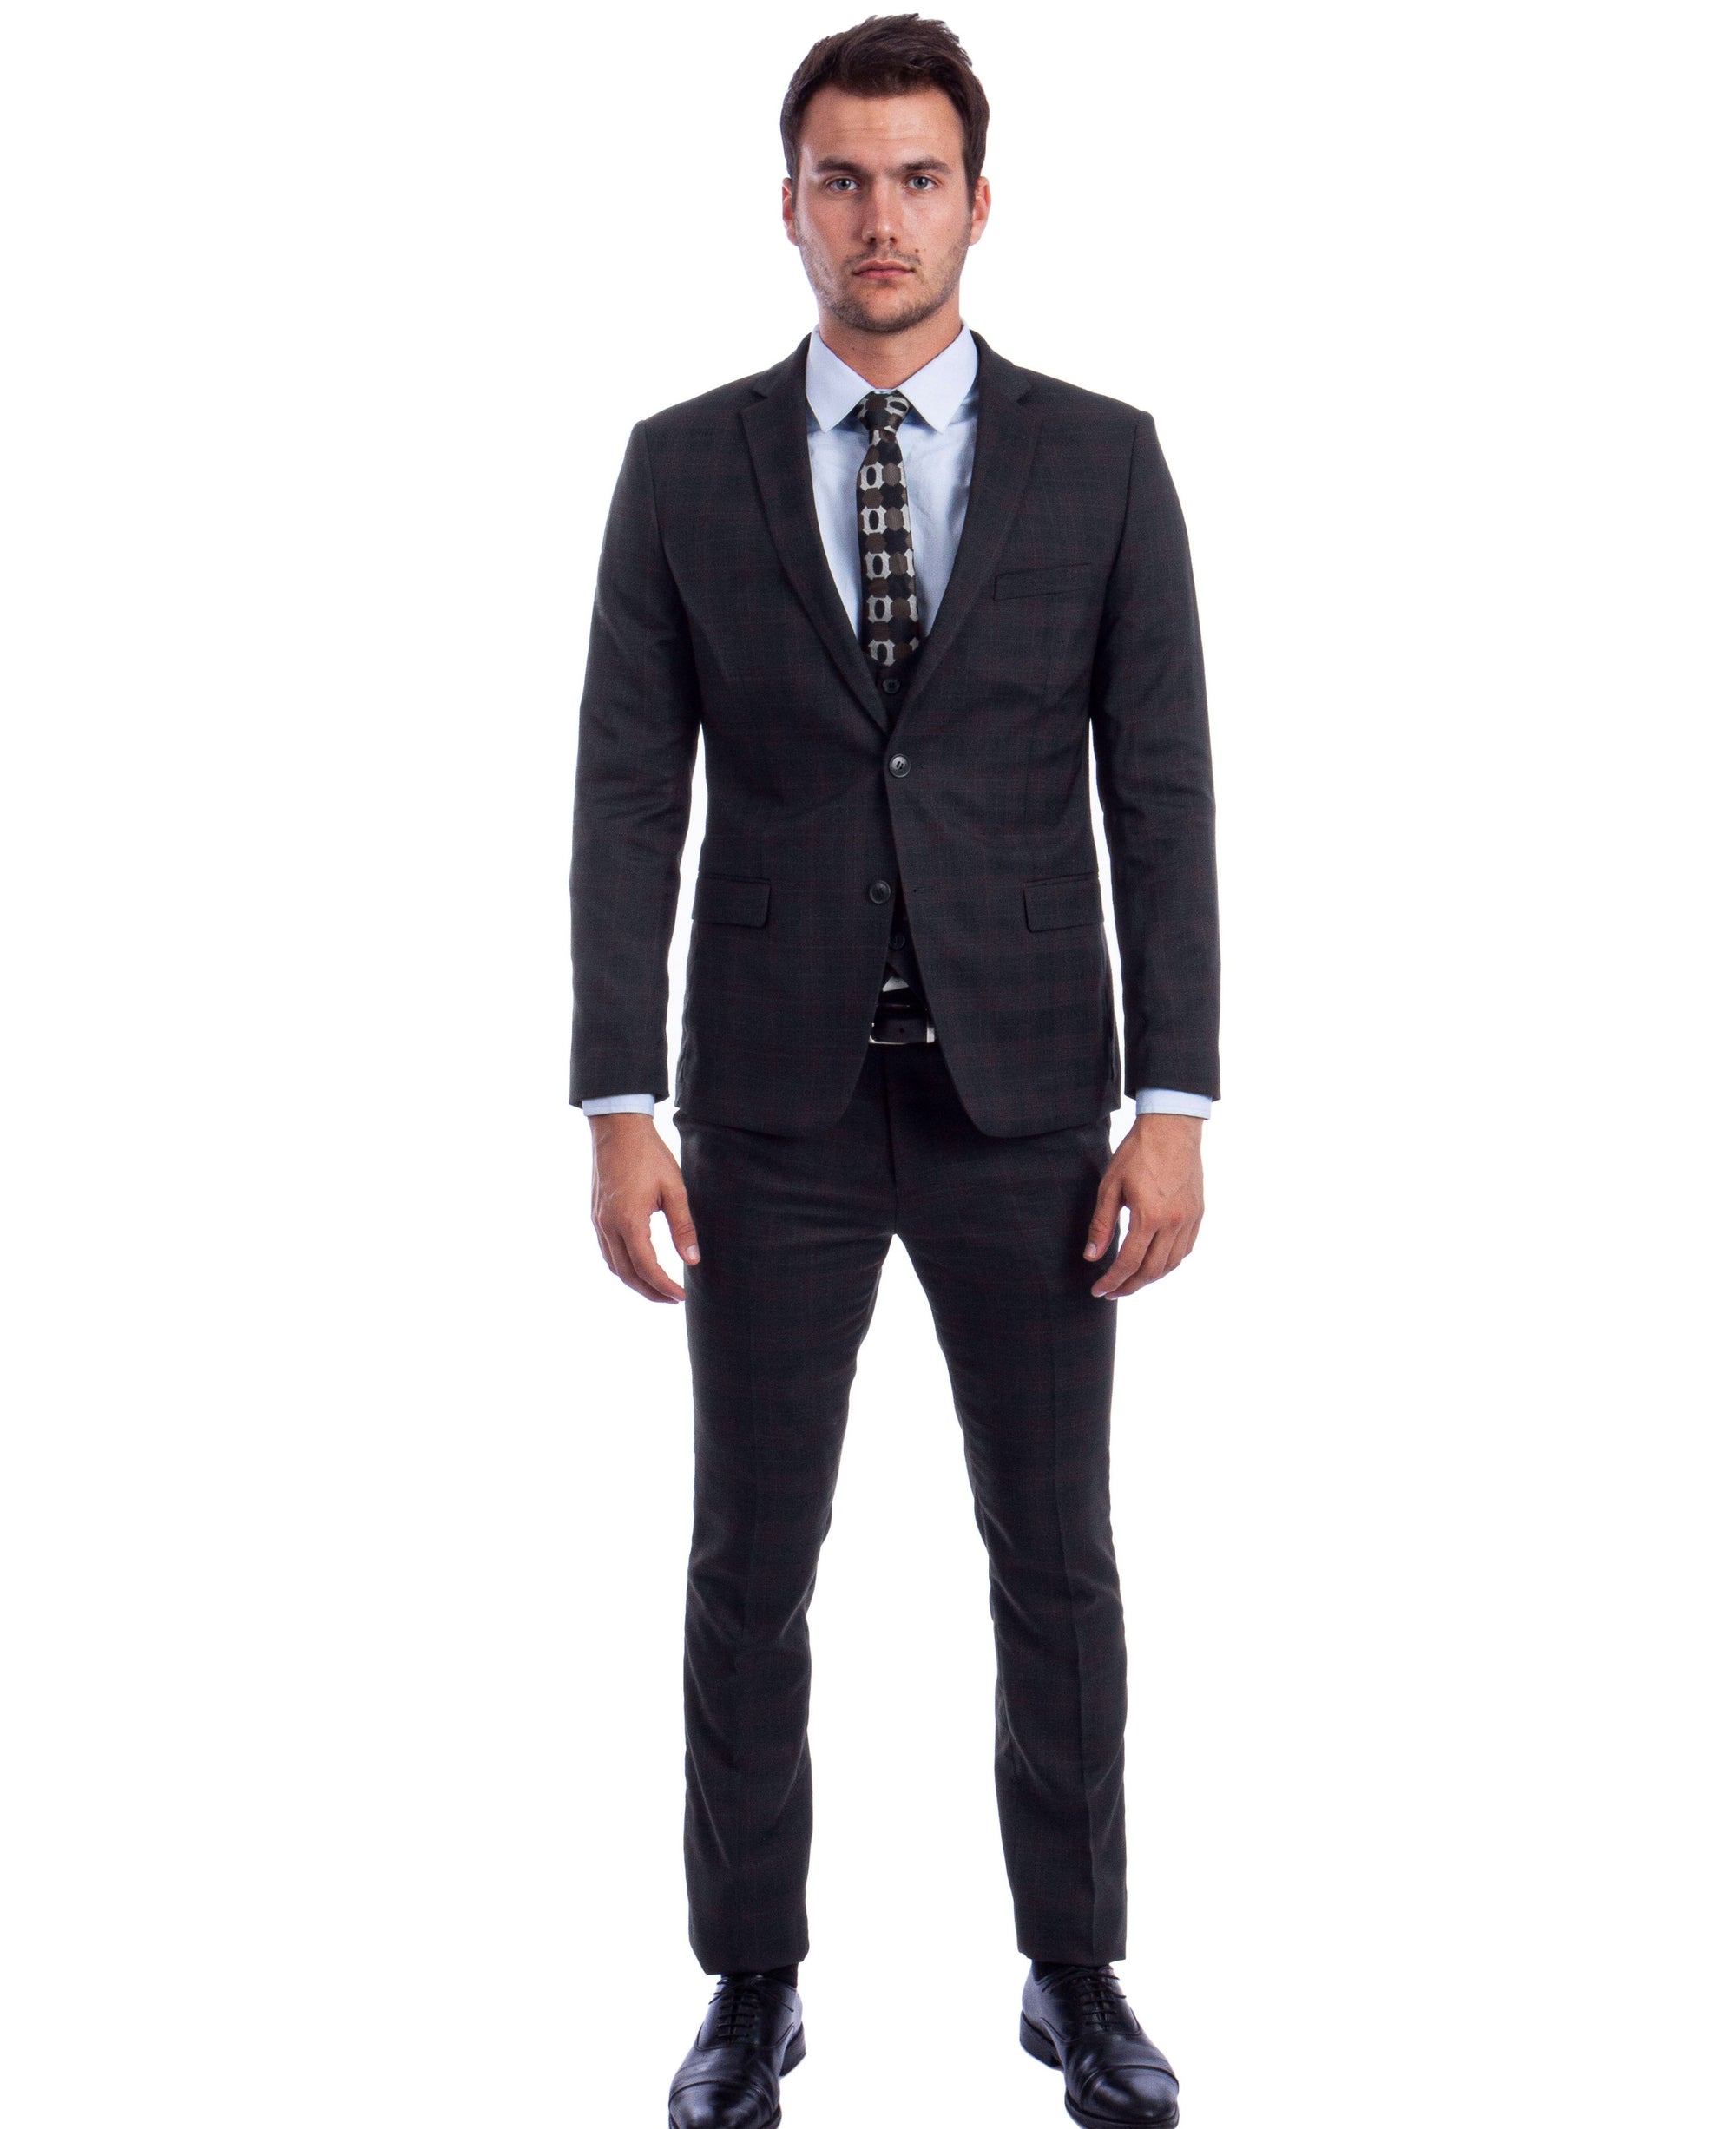 Men's Black/Black Square Pattern Suit